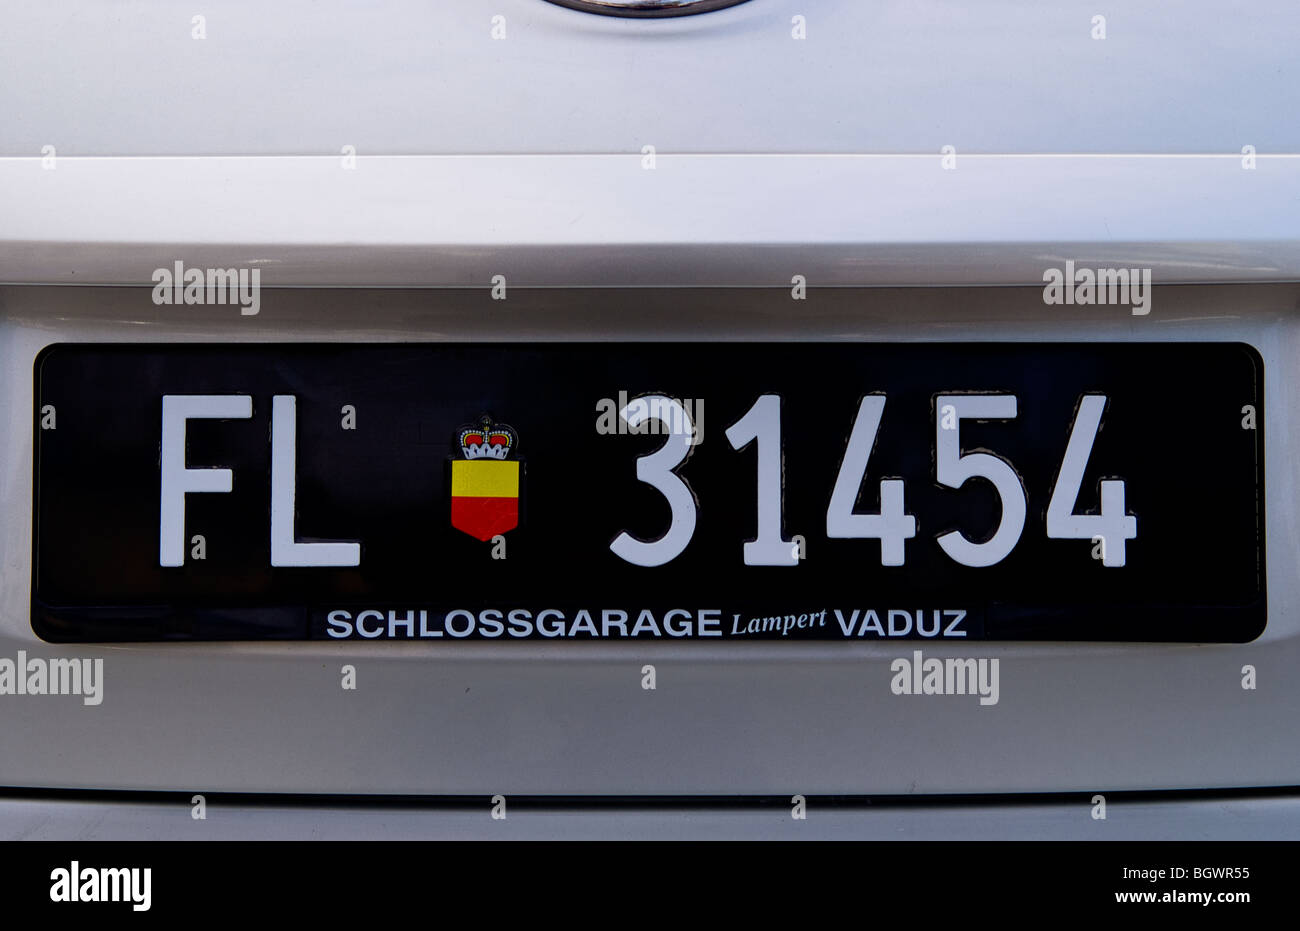 Auto-Kfz-Kennzeichen in kleinen abgelegenen Land Liechtenstein  Stockfotografie - Alamy